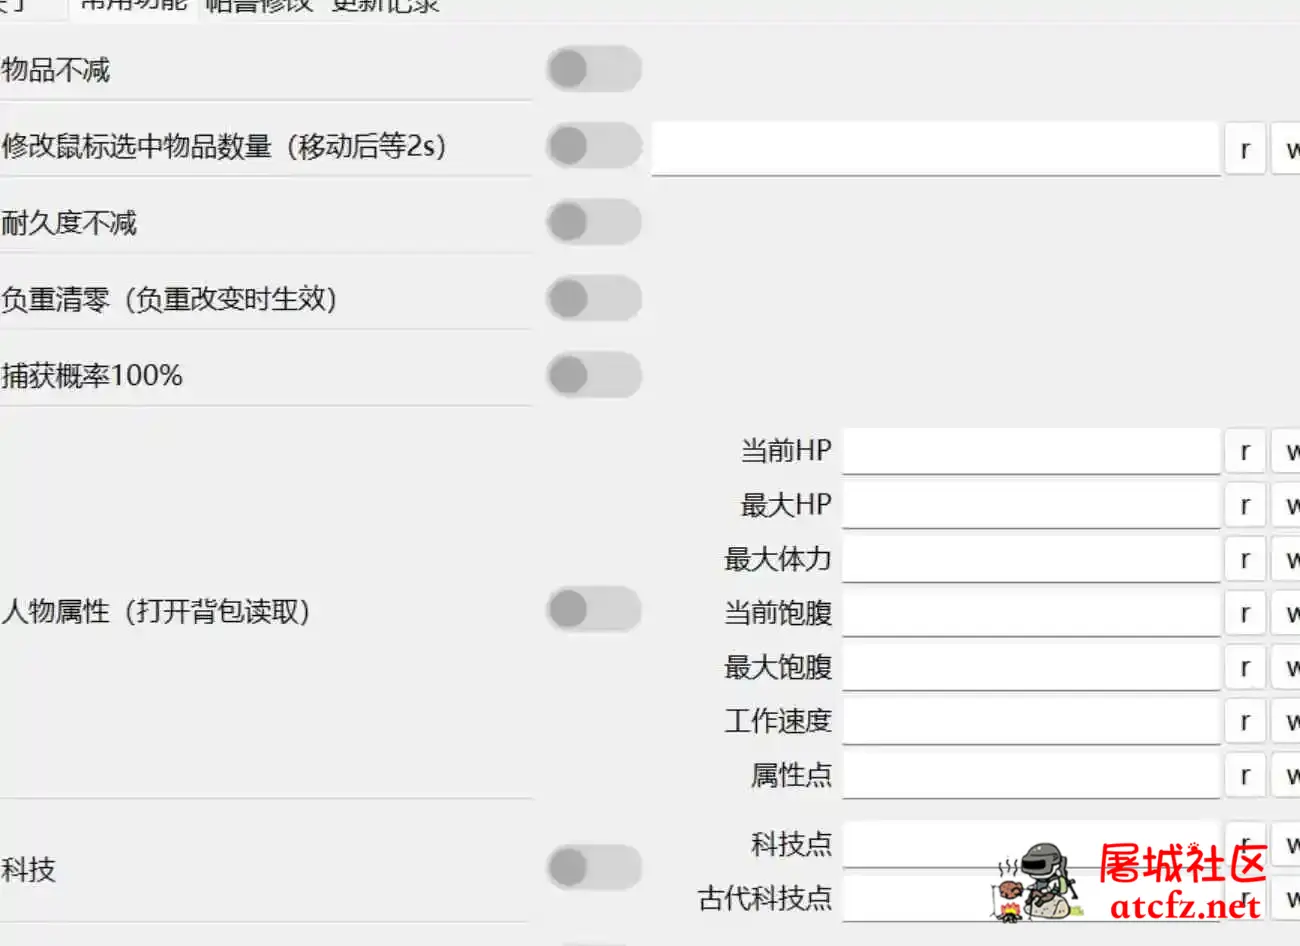 网友自制幻兽帕鲁修改器0.2.2.1中文版 屠城辅助网www.tcfz1.com990